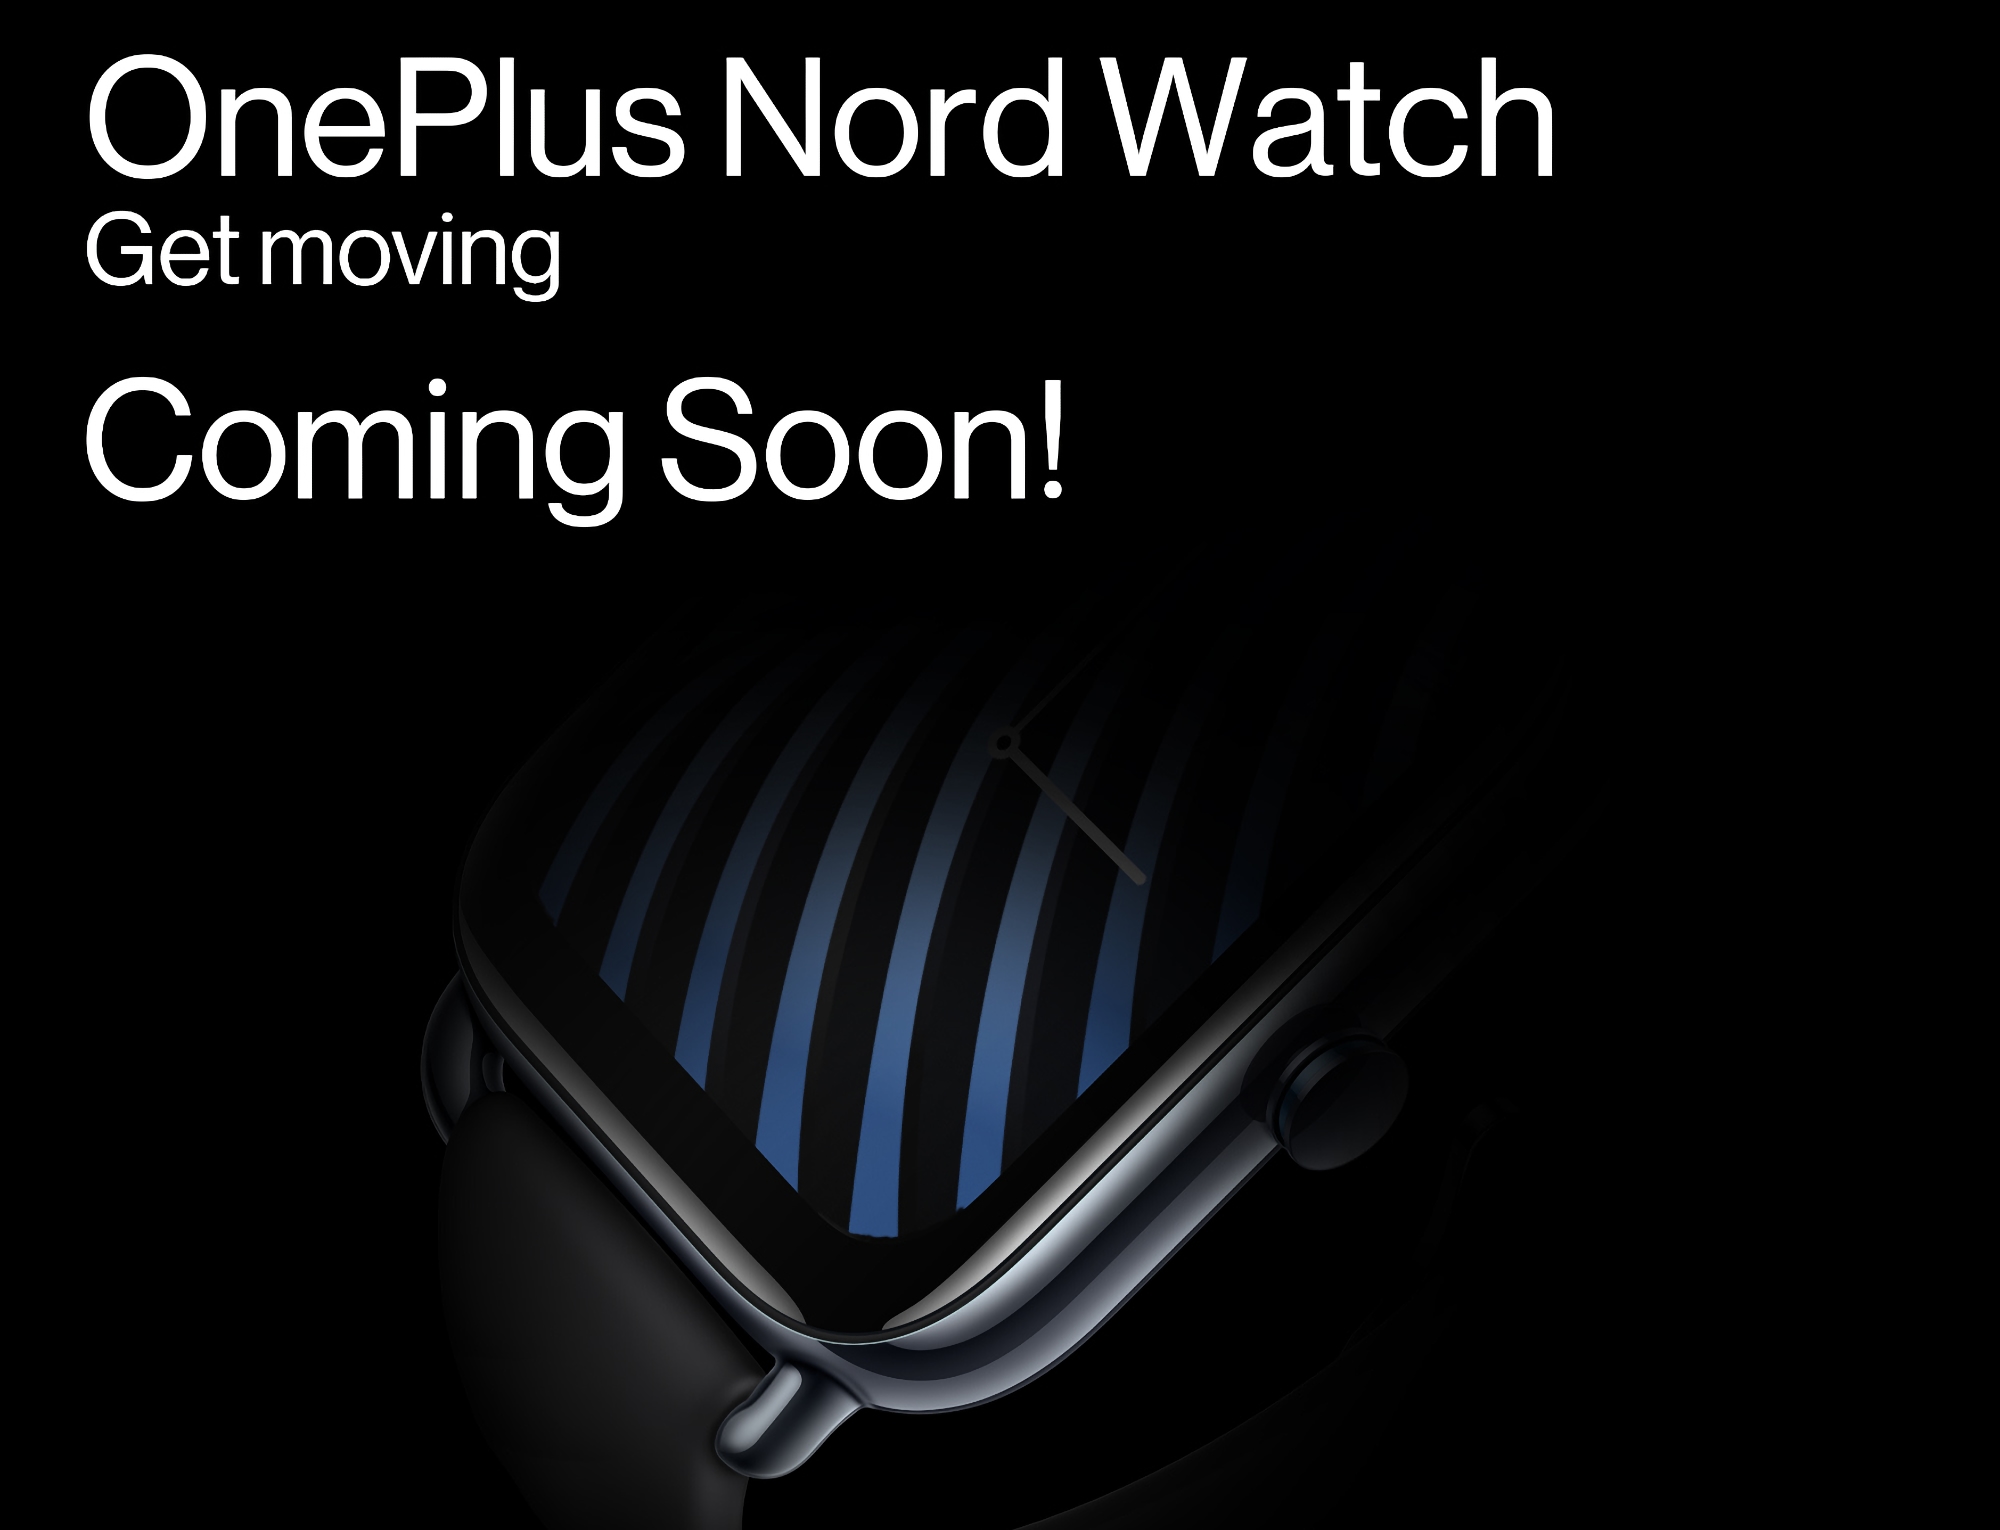 Zapowiedź bliska: OnePlus zaczyna teasingować premierę smartwatcha Nord Watch